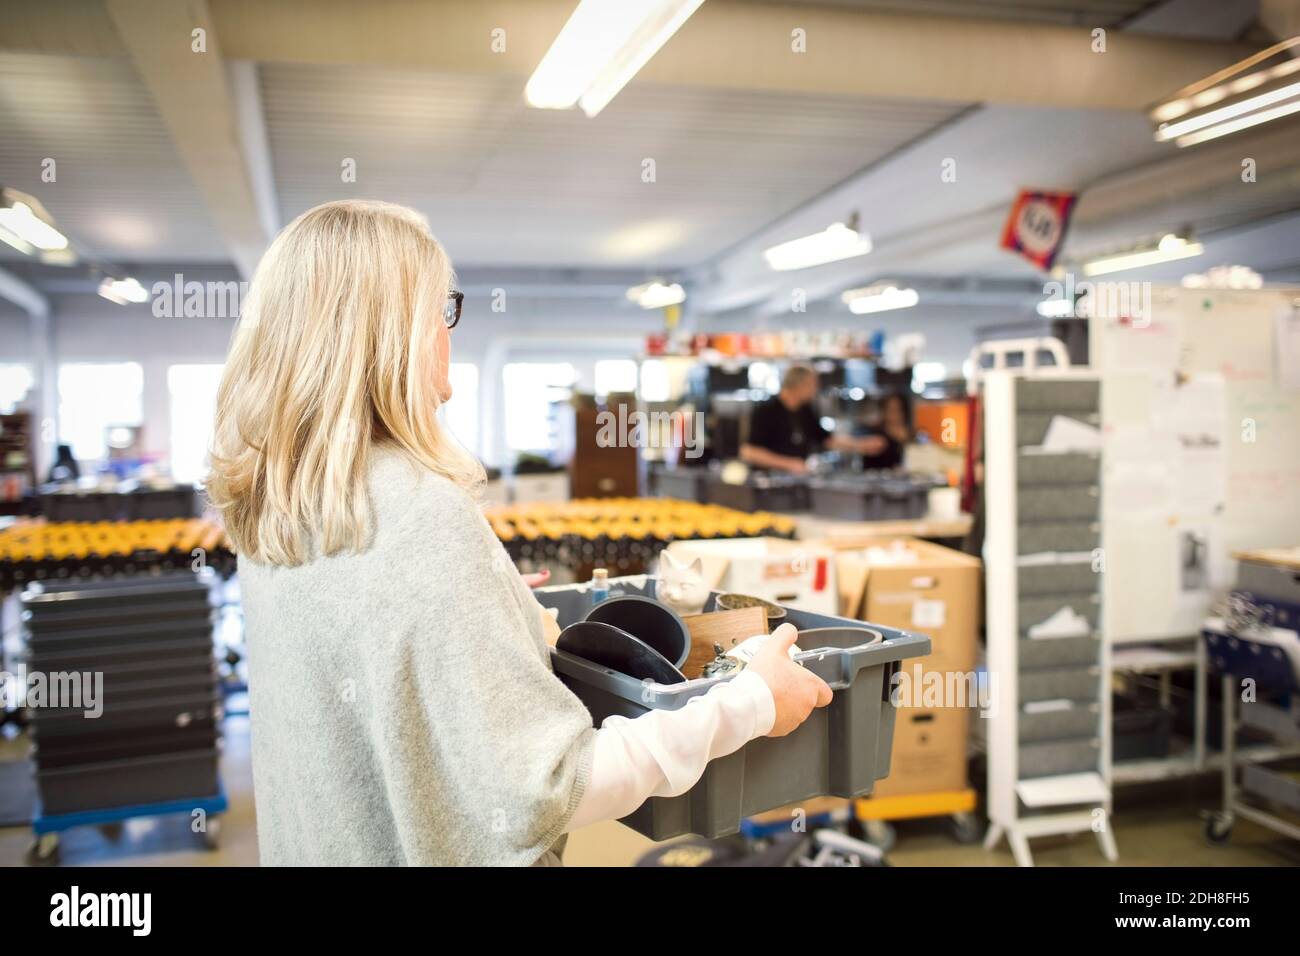 Mujer con pelo rubio llevando caja en el taller Foto de stock